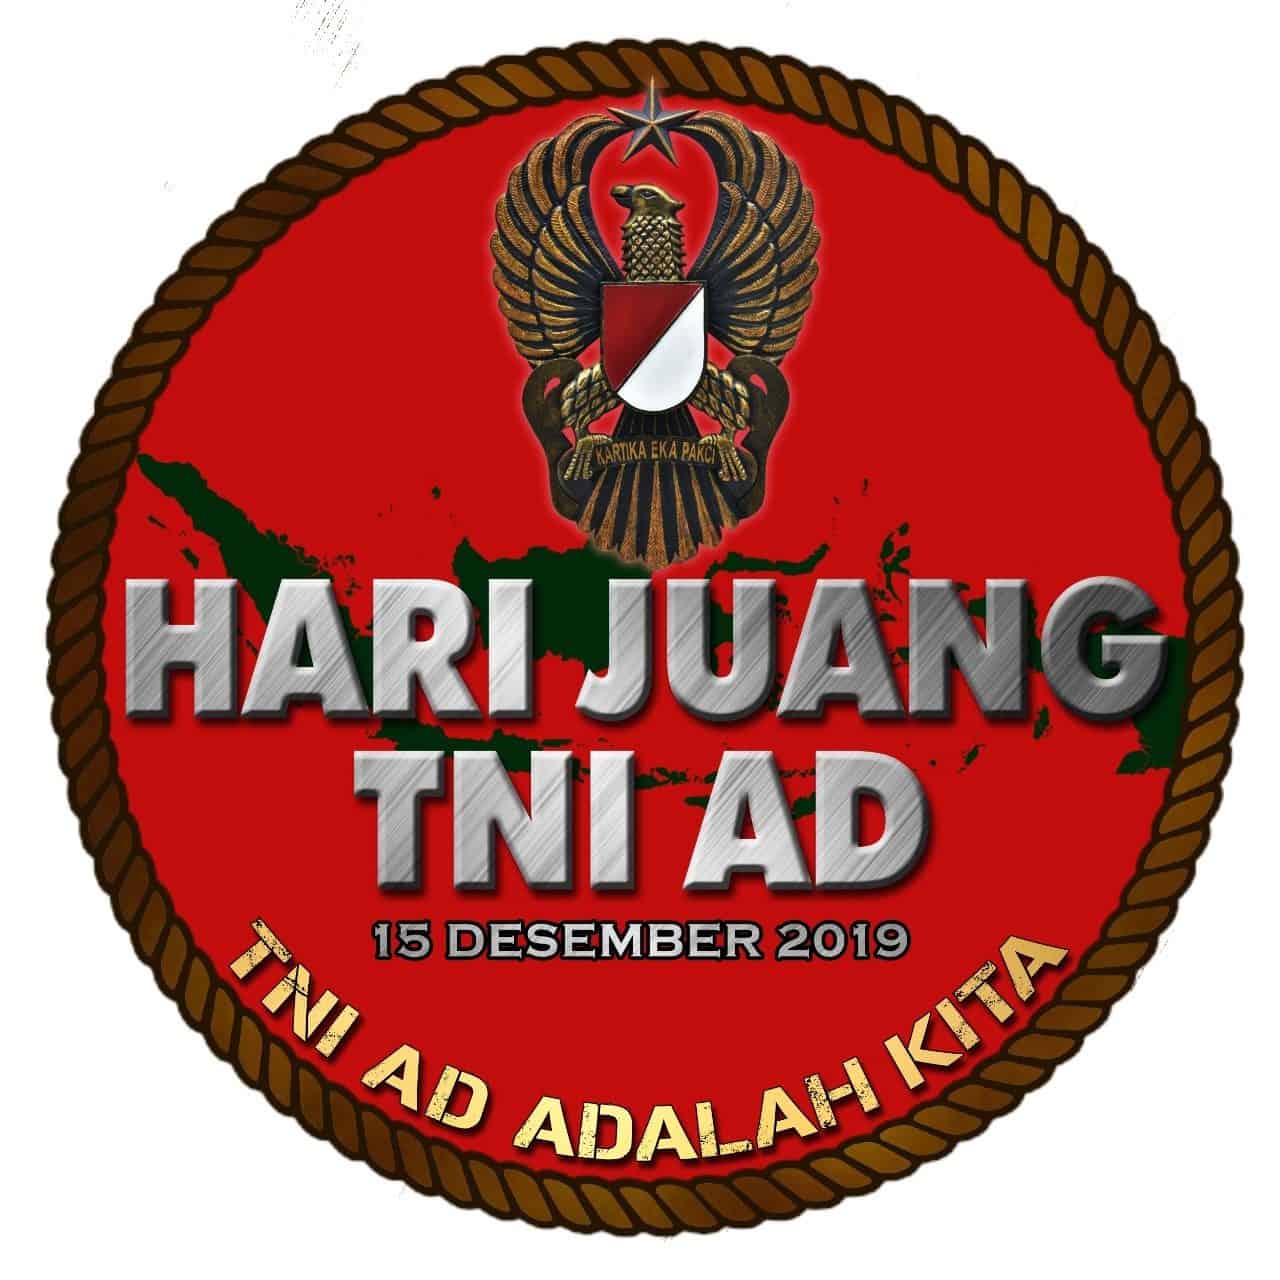 LOGO DAN BANNER HARI JUANG TNI AD